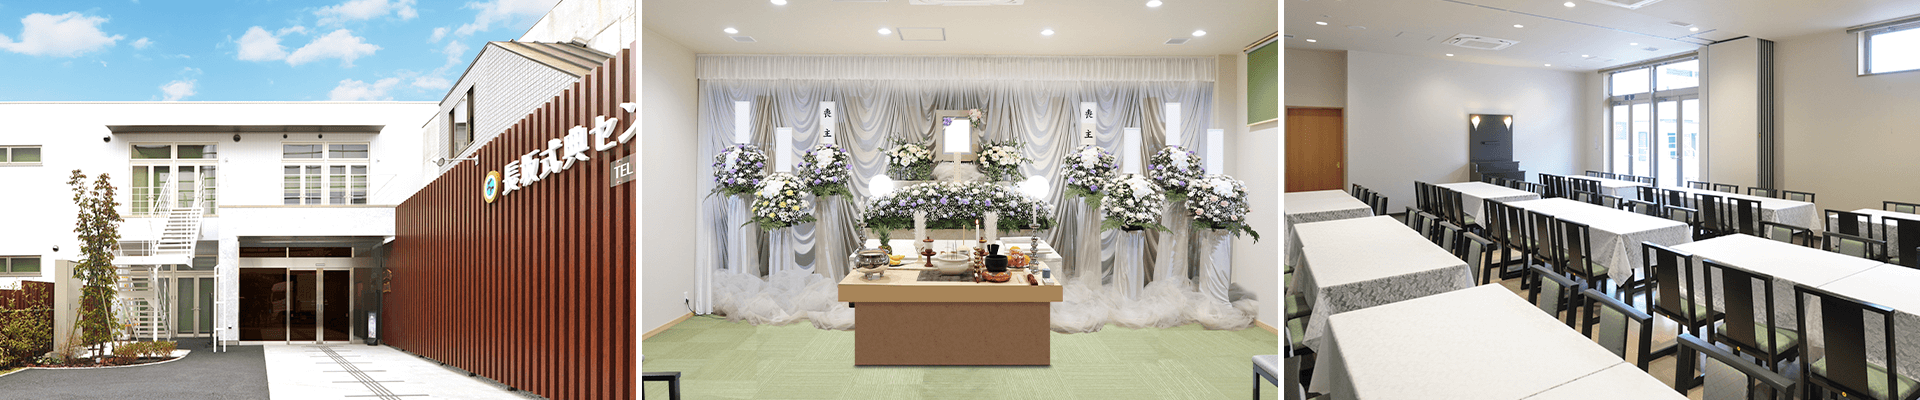 葬儀・葬式・家族葬なら16.5万円からできる長坂式典センター 狭山市の葬儀場一覧